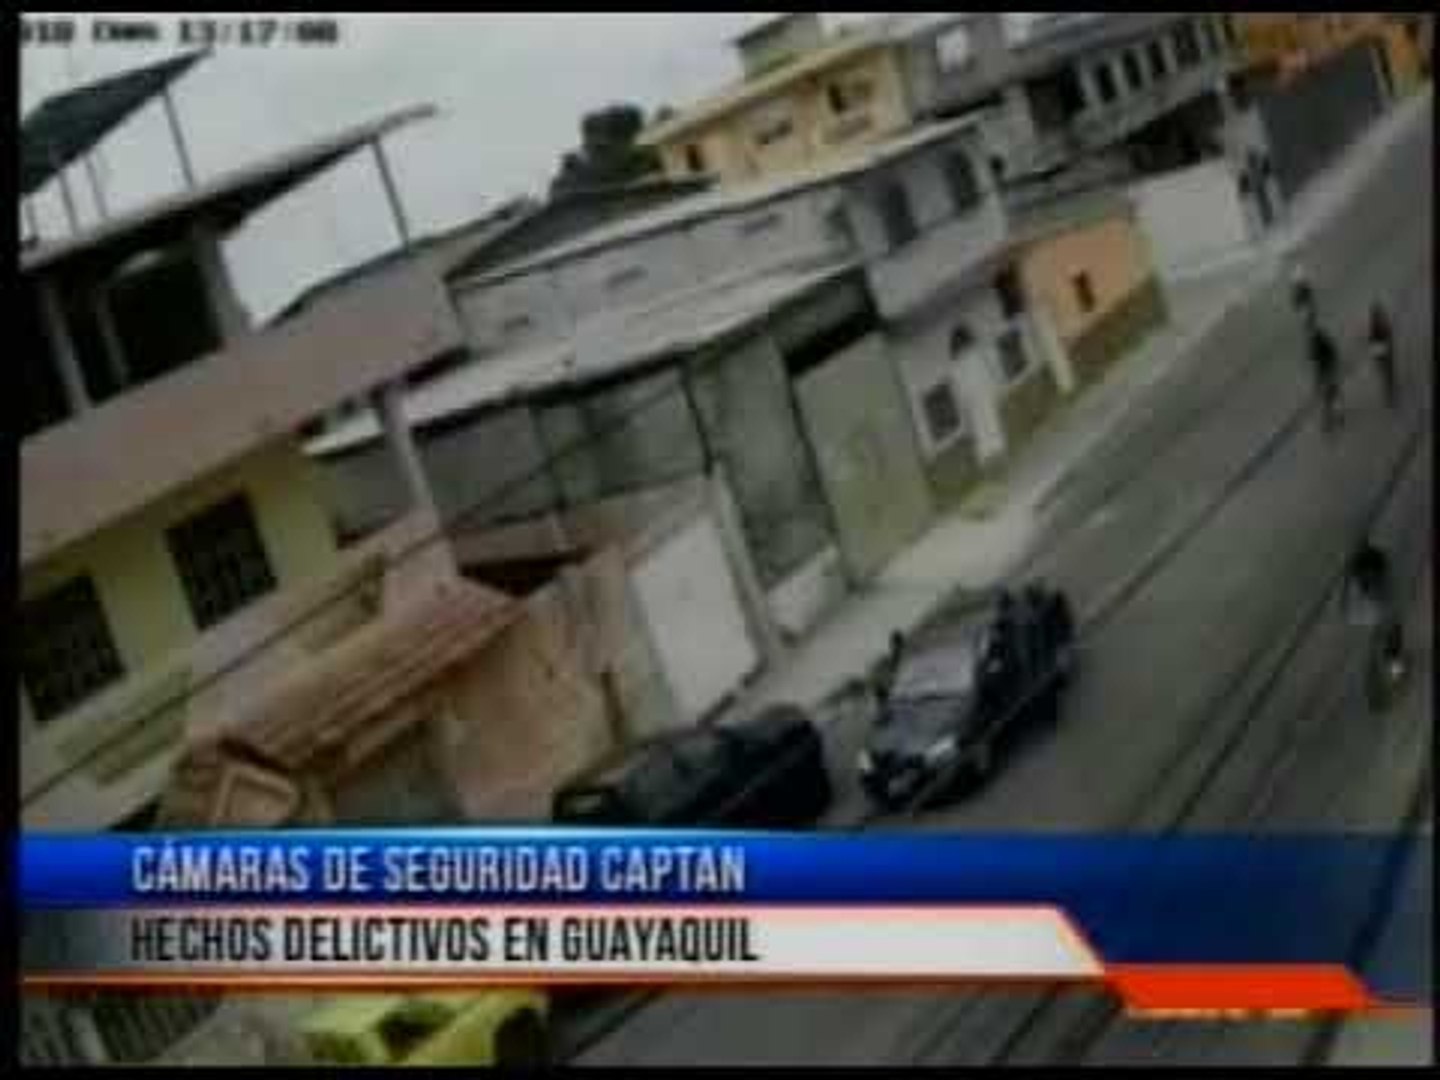 Cámaras de seguridad captan hechos delictivos en Guayaquil - Vídeo  Dailymotion